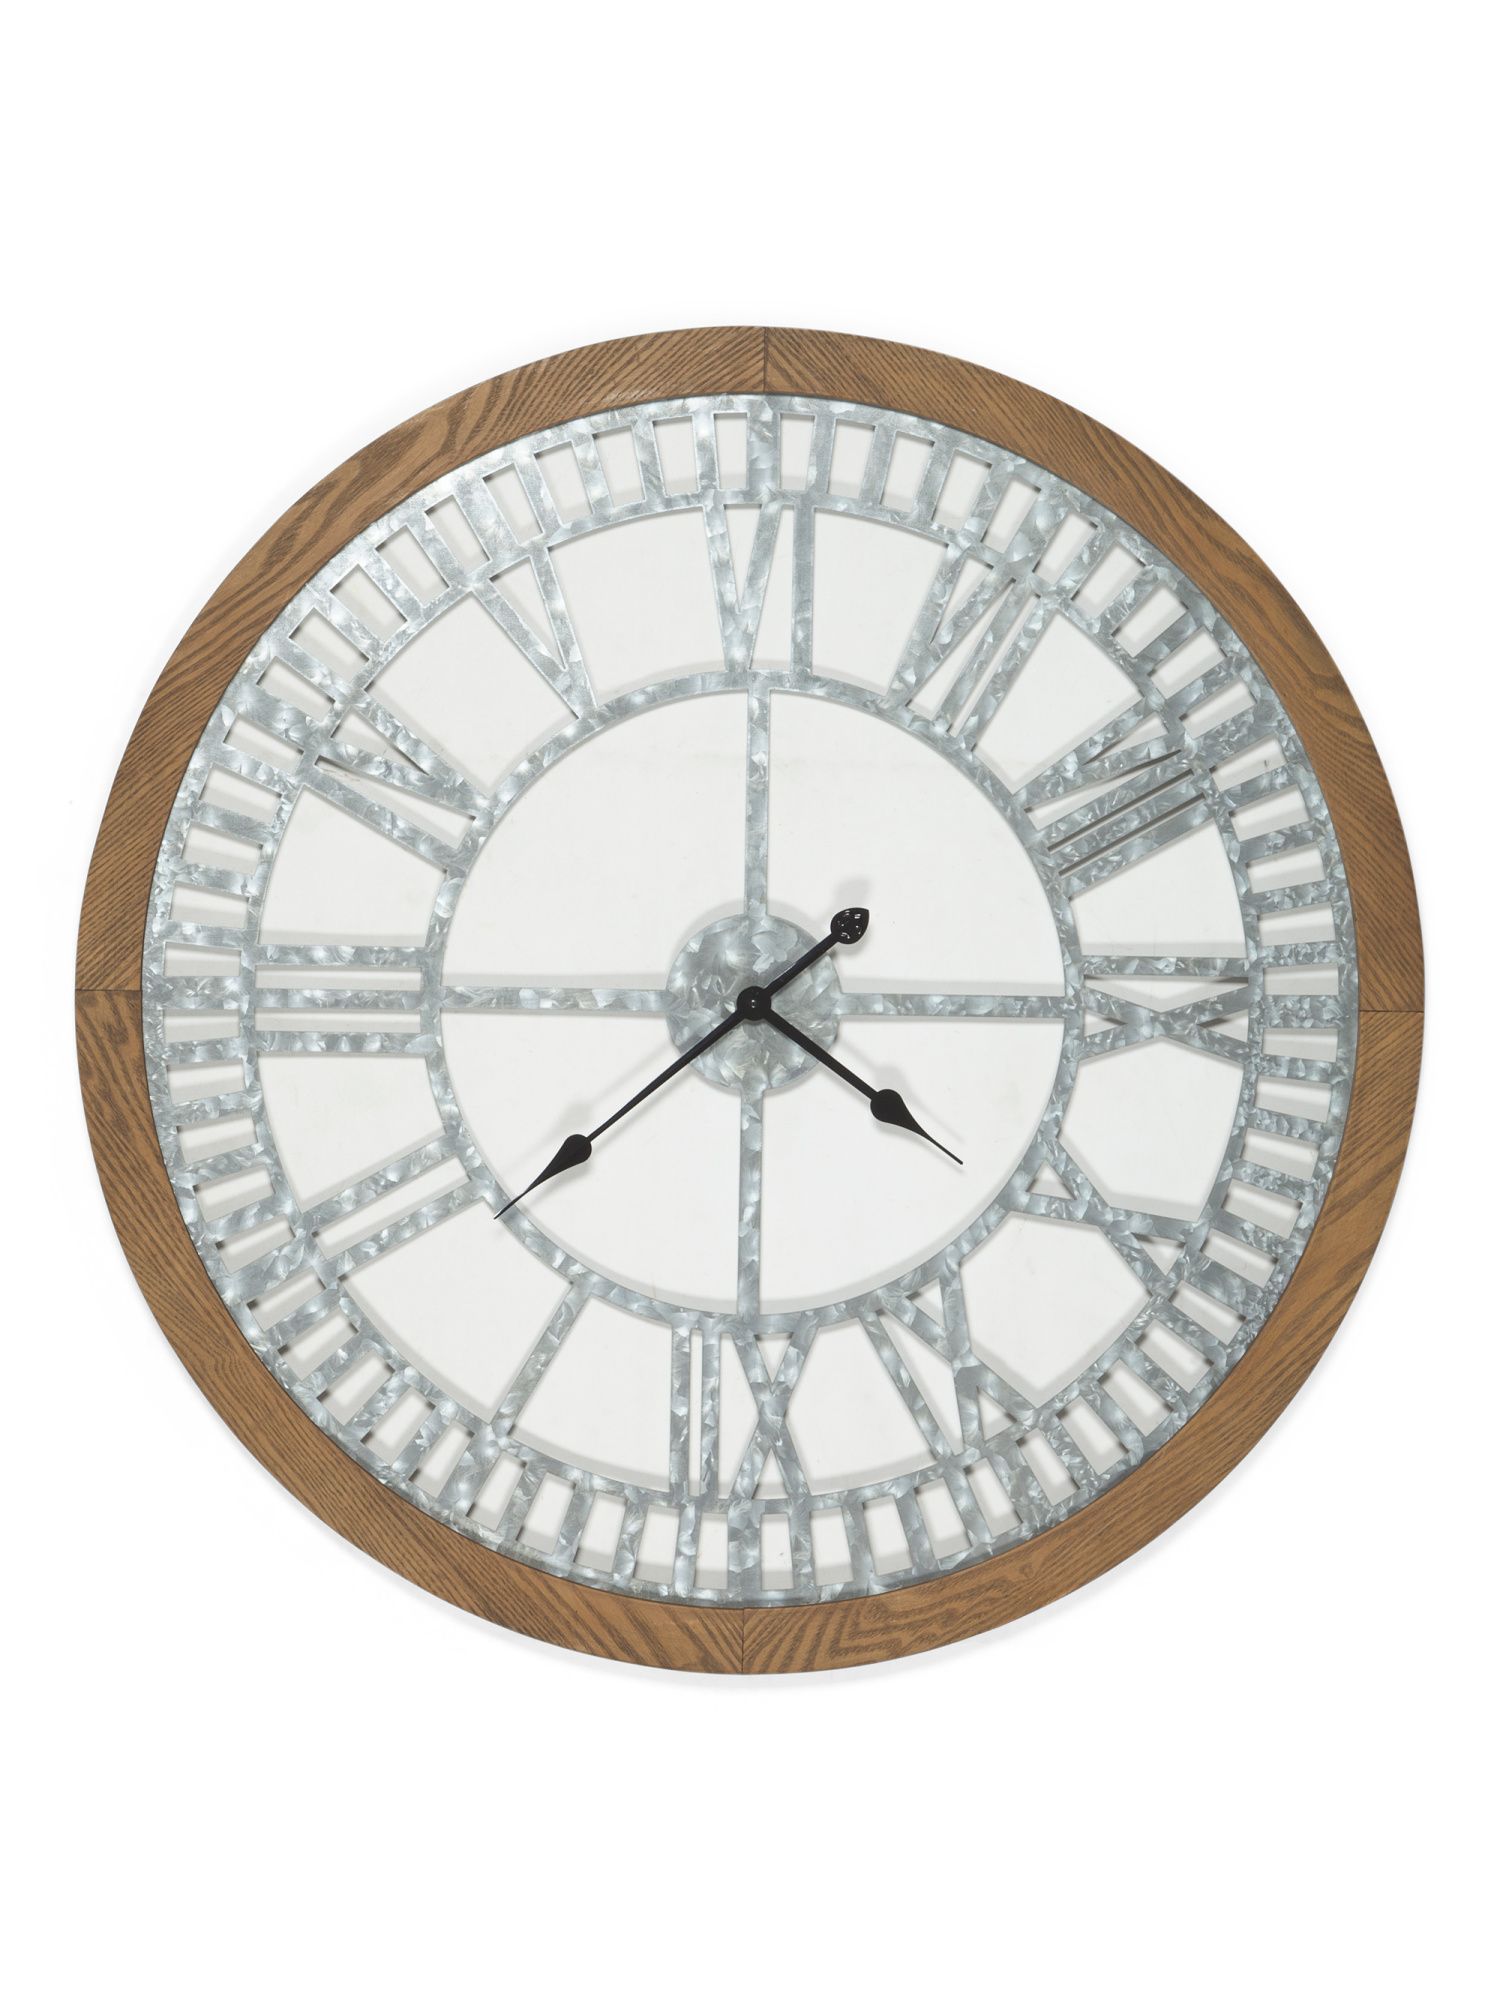 Galvanized Metal And Wood Clock | TJ Maxx